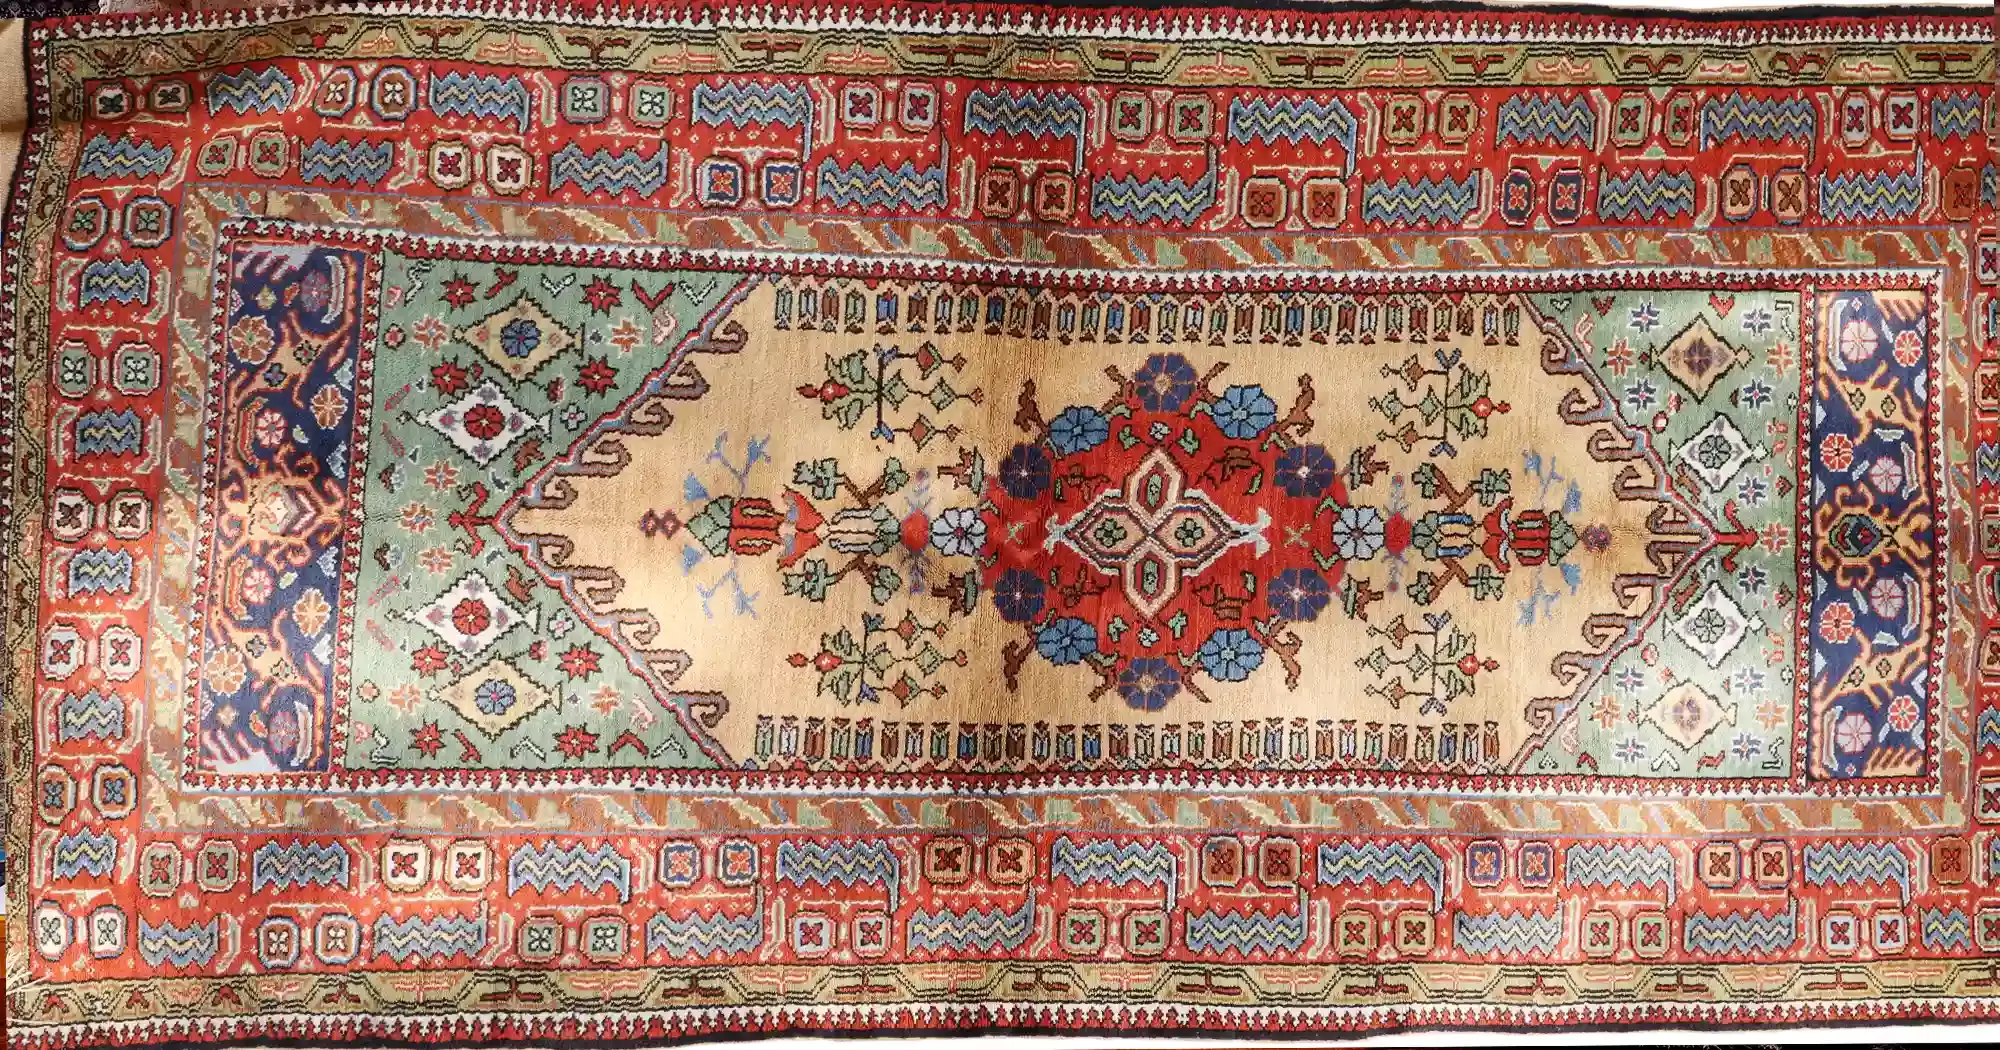 Handwoven carpets in small size (Zar and Nim, Kalegi, Kenare, Padari)